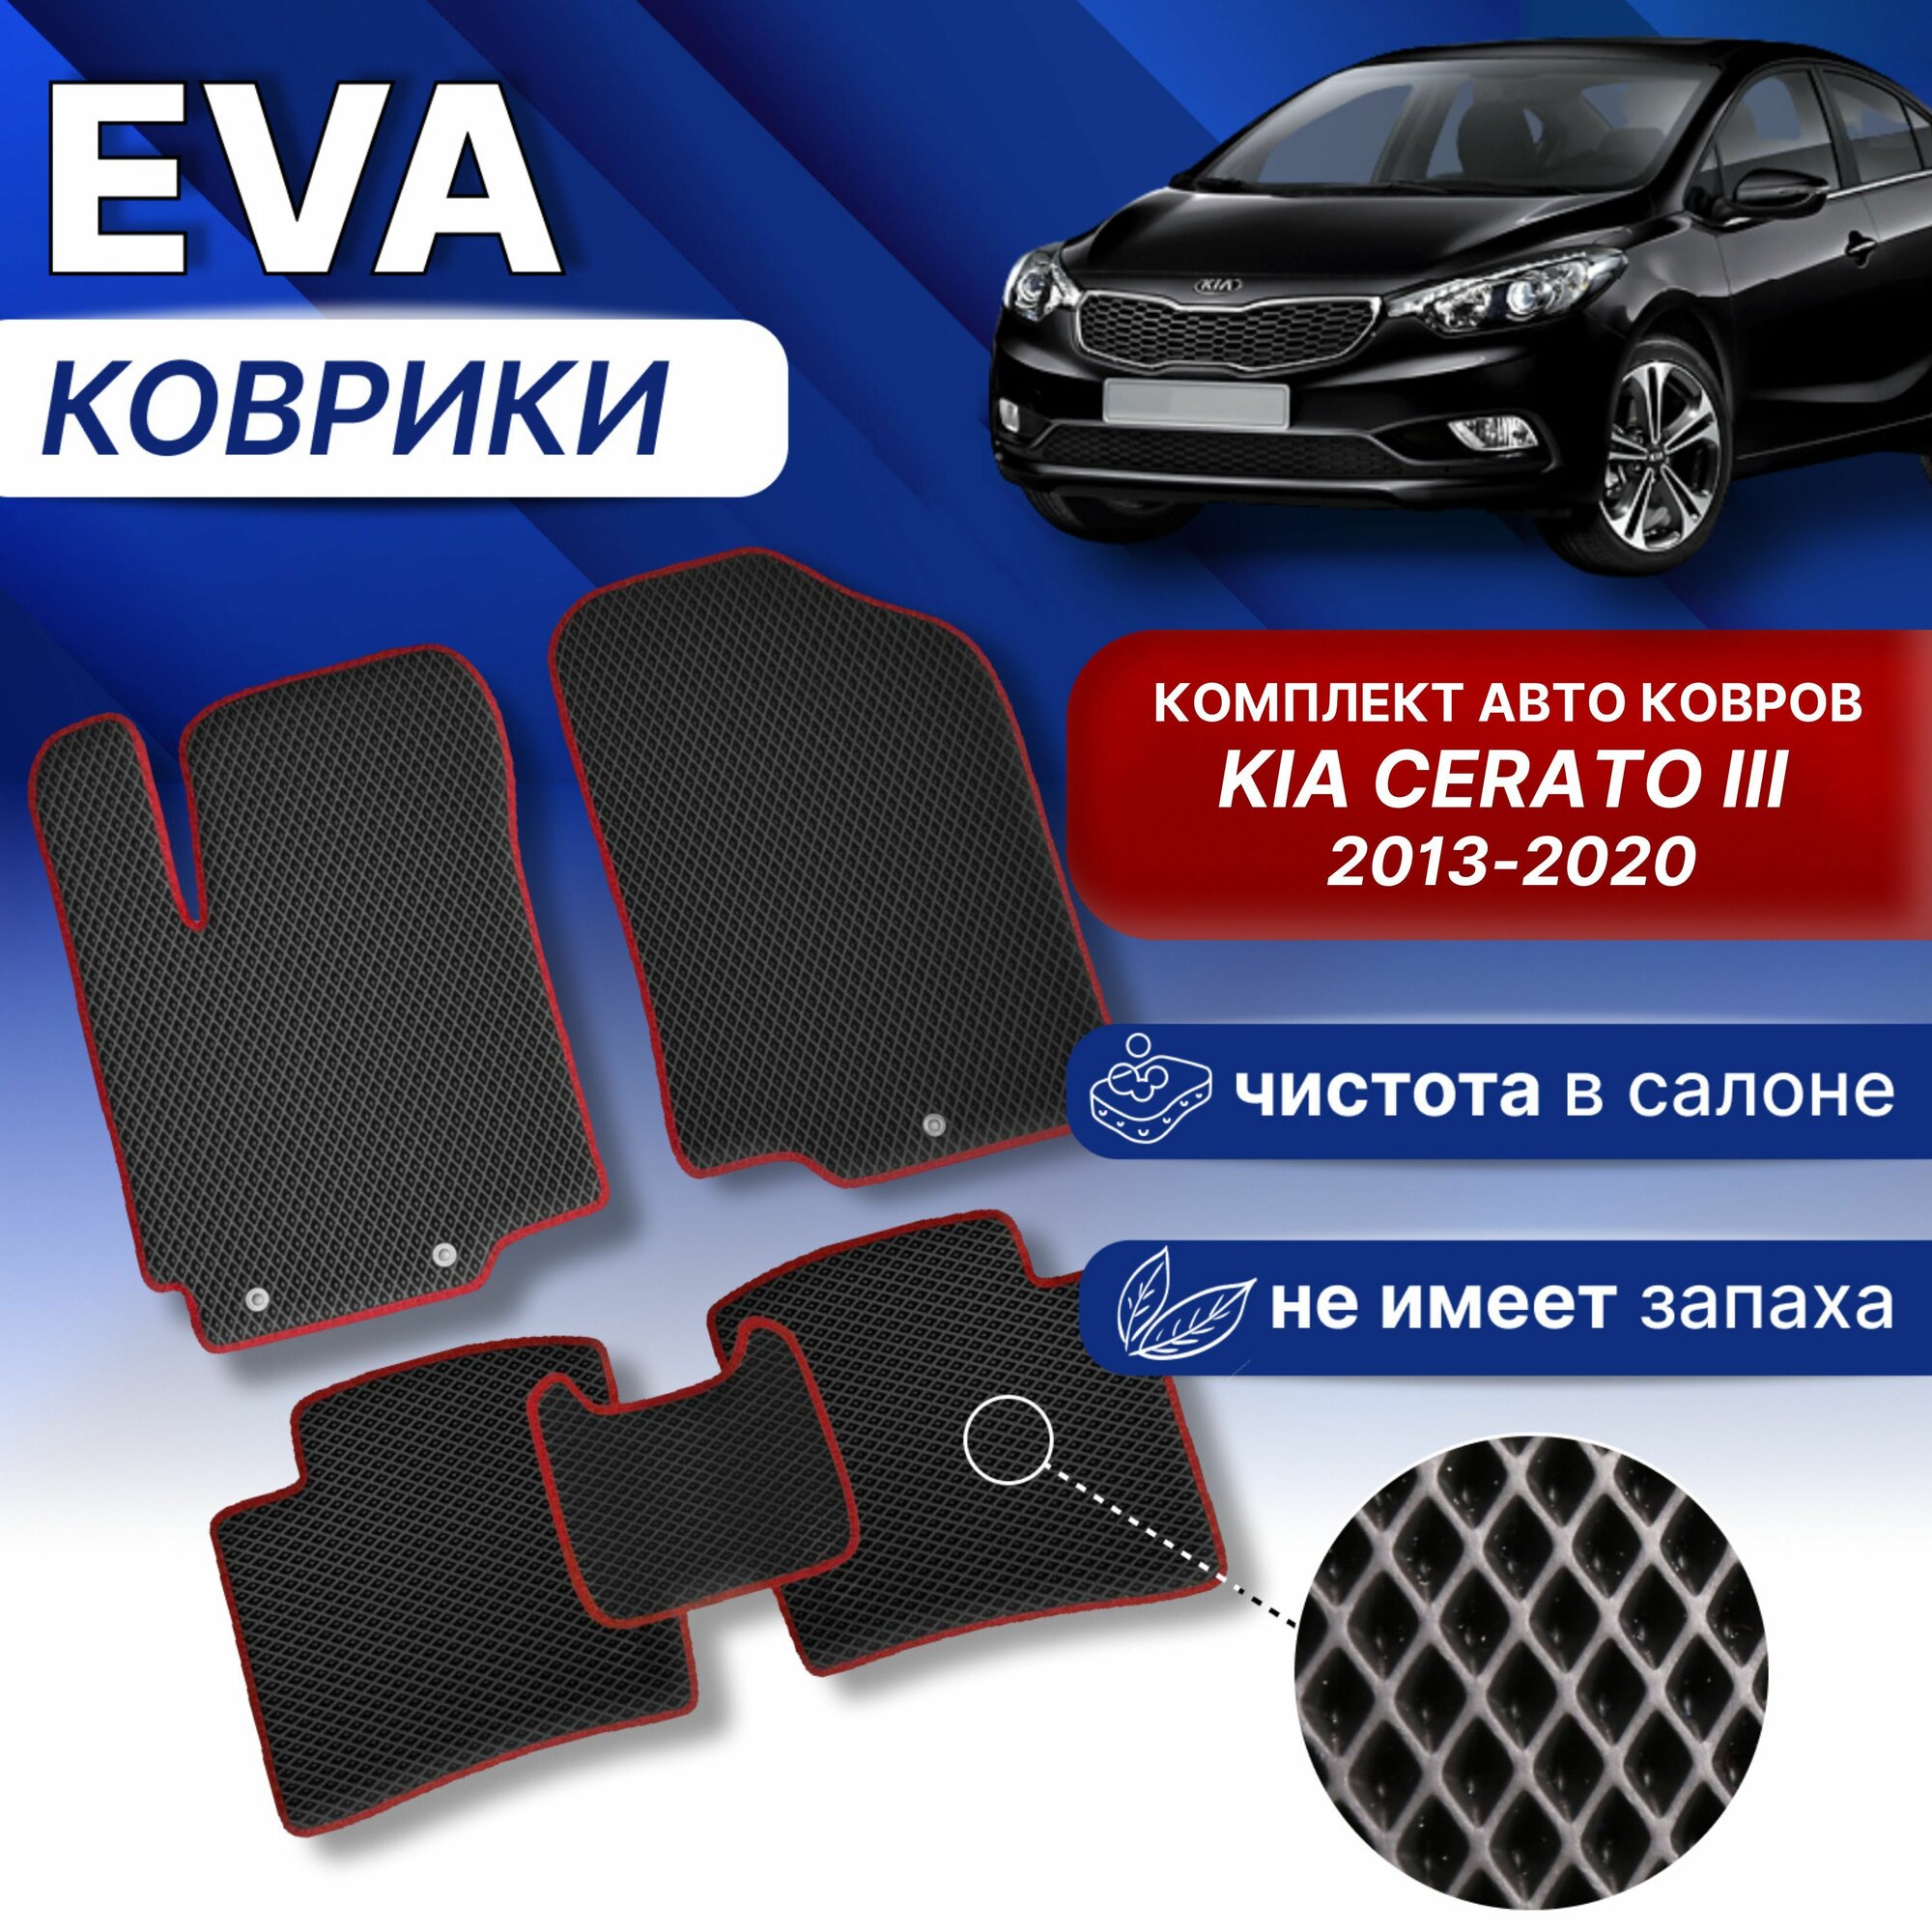 EVA коврики в КИЯ серато 3 (черный/красный кант) ЭВА комплект КИА CERATO 3 2013-2020 г